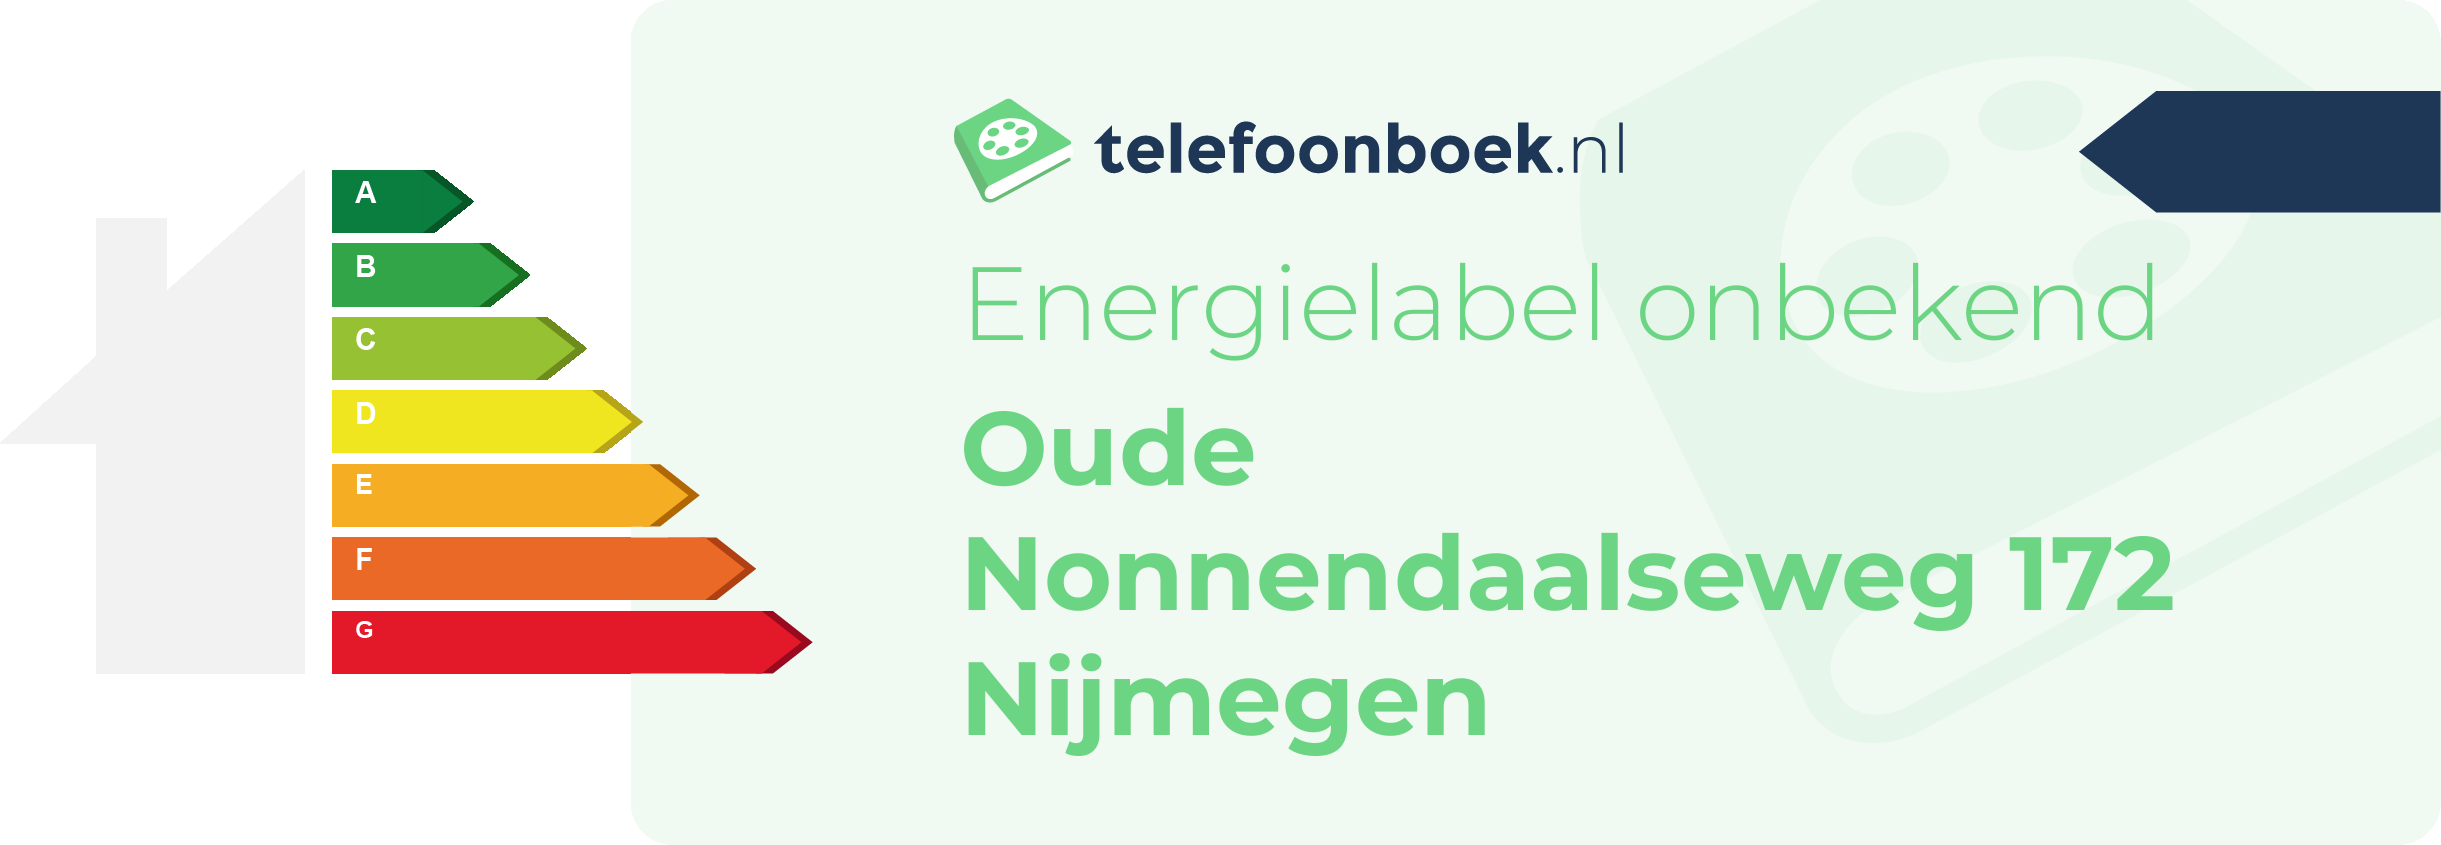 Energielabel Oude Nonnendaalseweg 172 Nijmegen